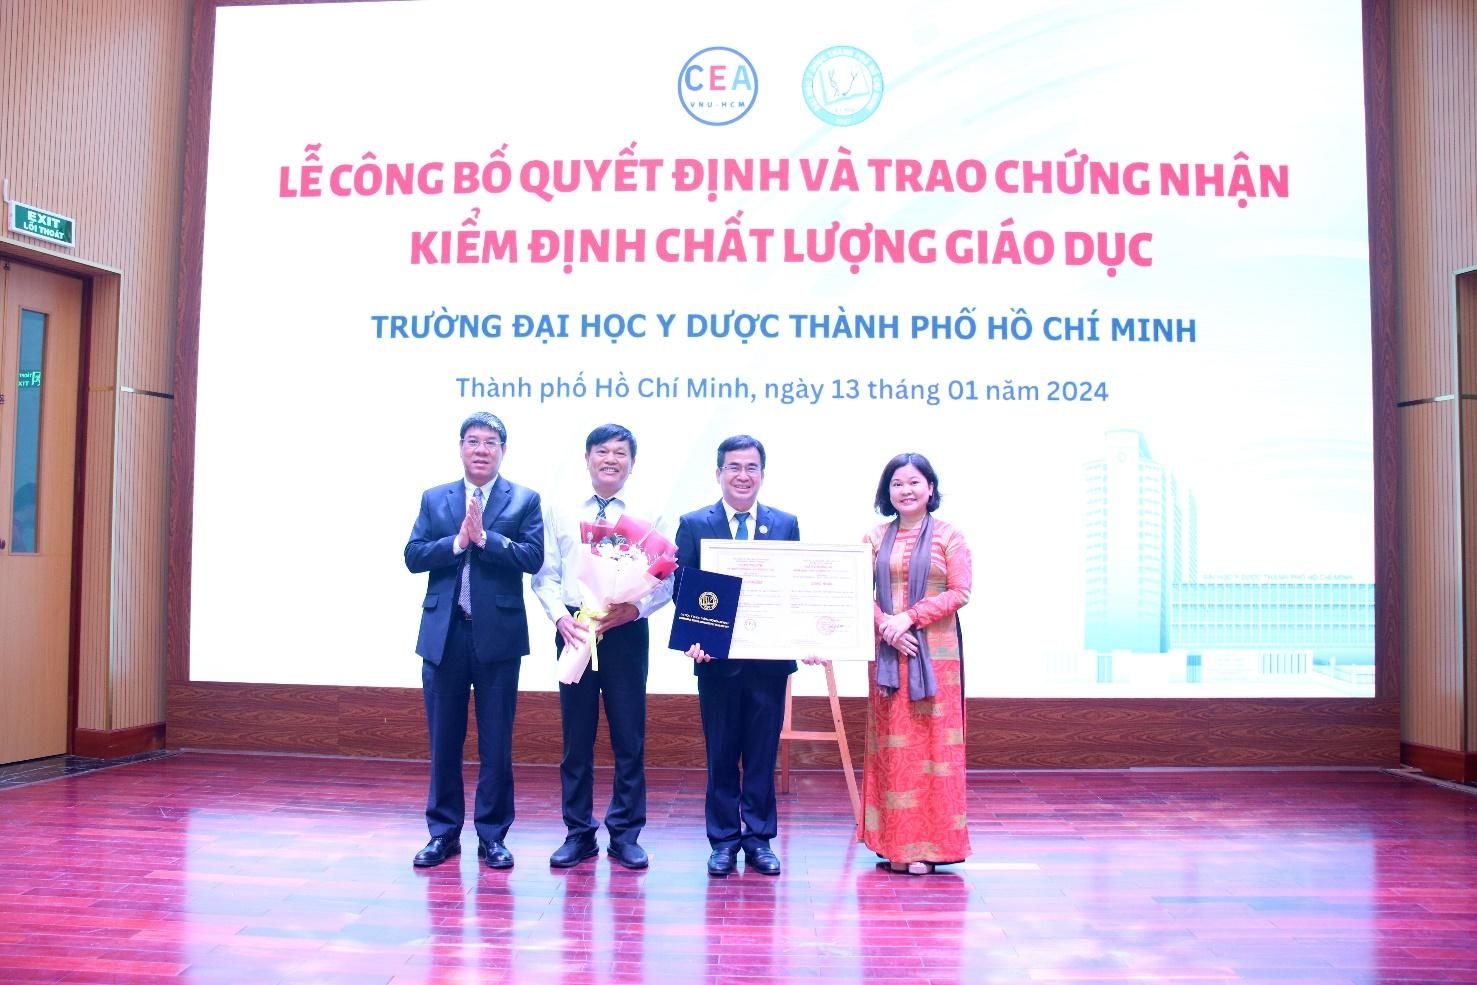 Đại học Y dược Thành phố Hồ Chí Minh đạt chứng nhận kiểm định cơ sở giáo dục chu kỳ 2